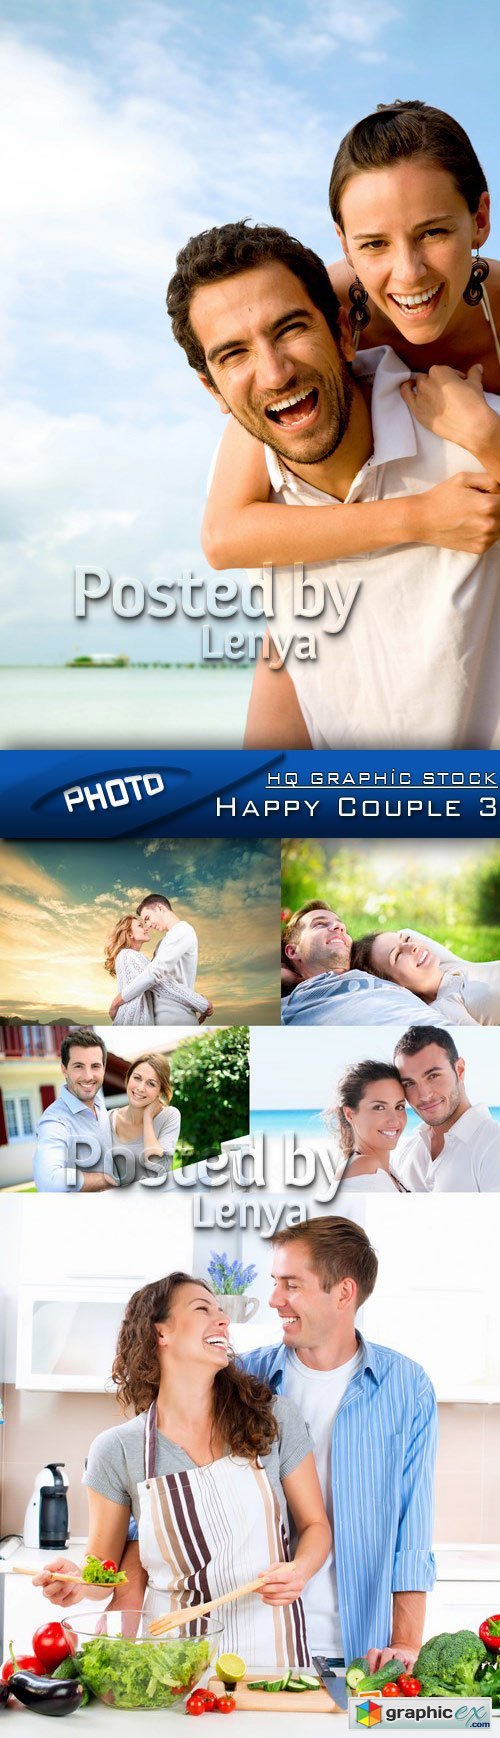 Stock Photo - Happy Couple 3